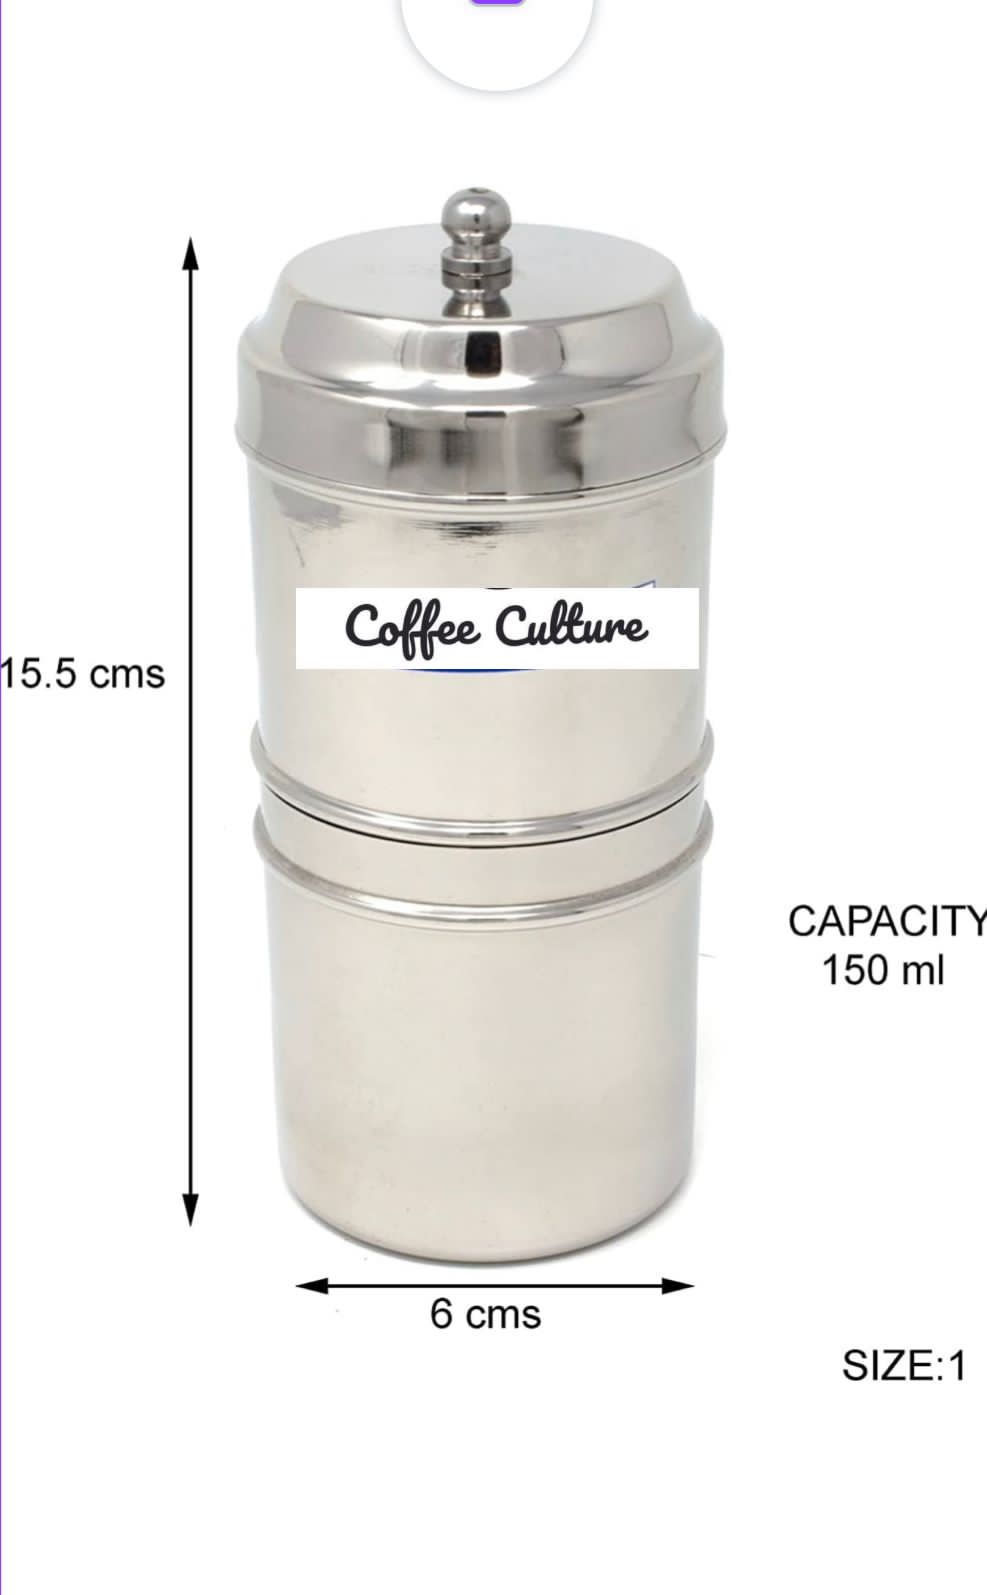 https://www.coffee-culture.in/cdn/shop/products/FilterCoffeeDripmaker3.jpg?v=1667456738&width=1445